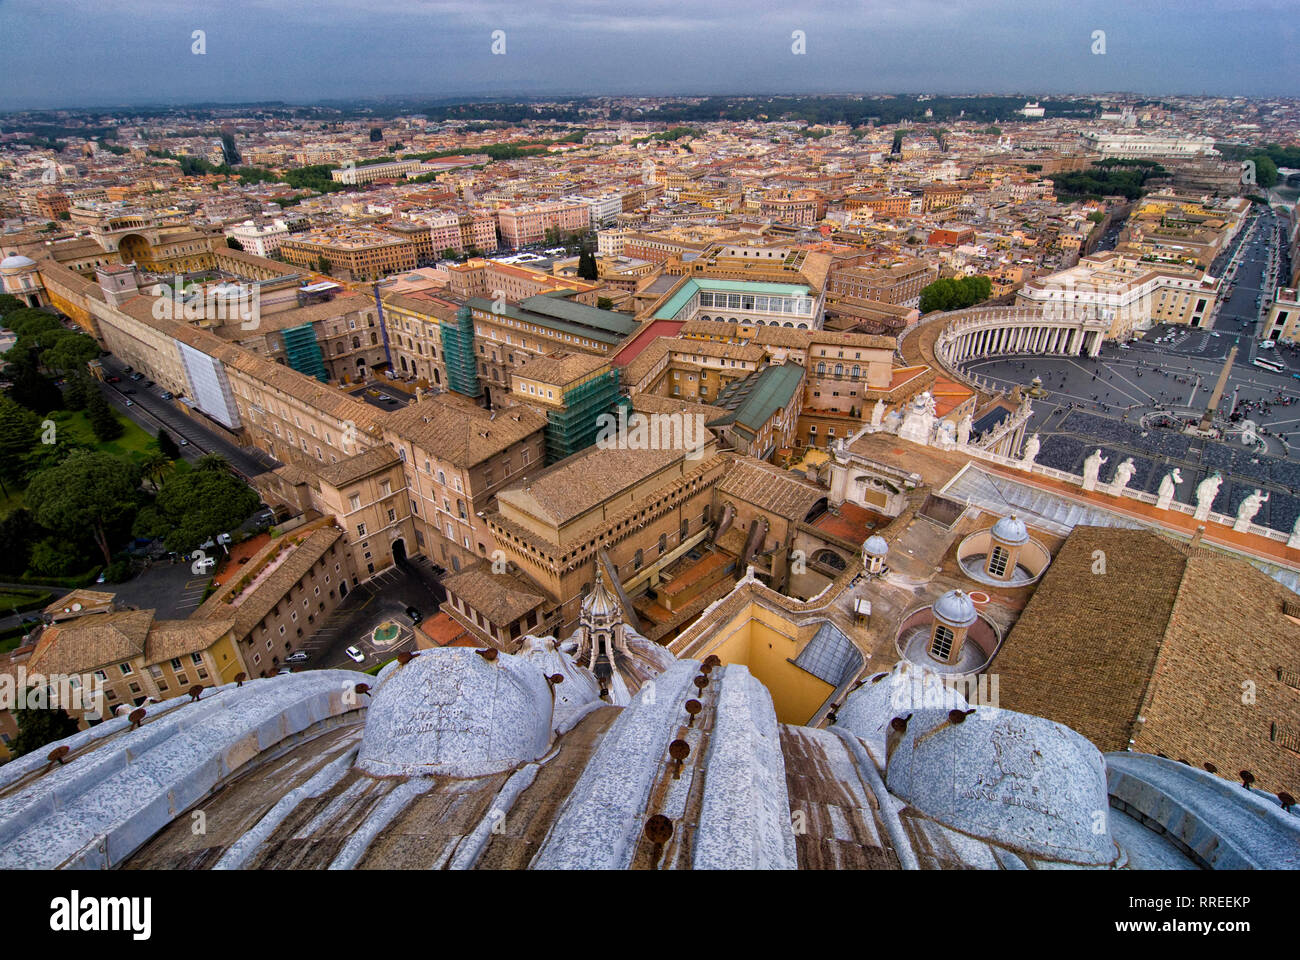 (c) Dirk A. Friedrich Blick auf Daecher Roms von der Kuppel des Sant Peters Dom . Rechts im Bild ist noch der Peters Platz zu erkennen. Stock Photo